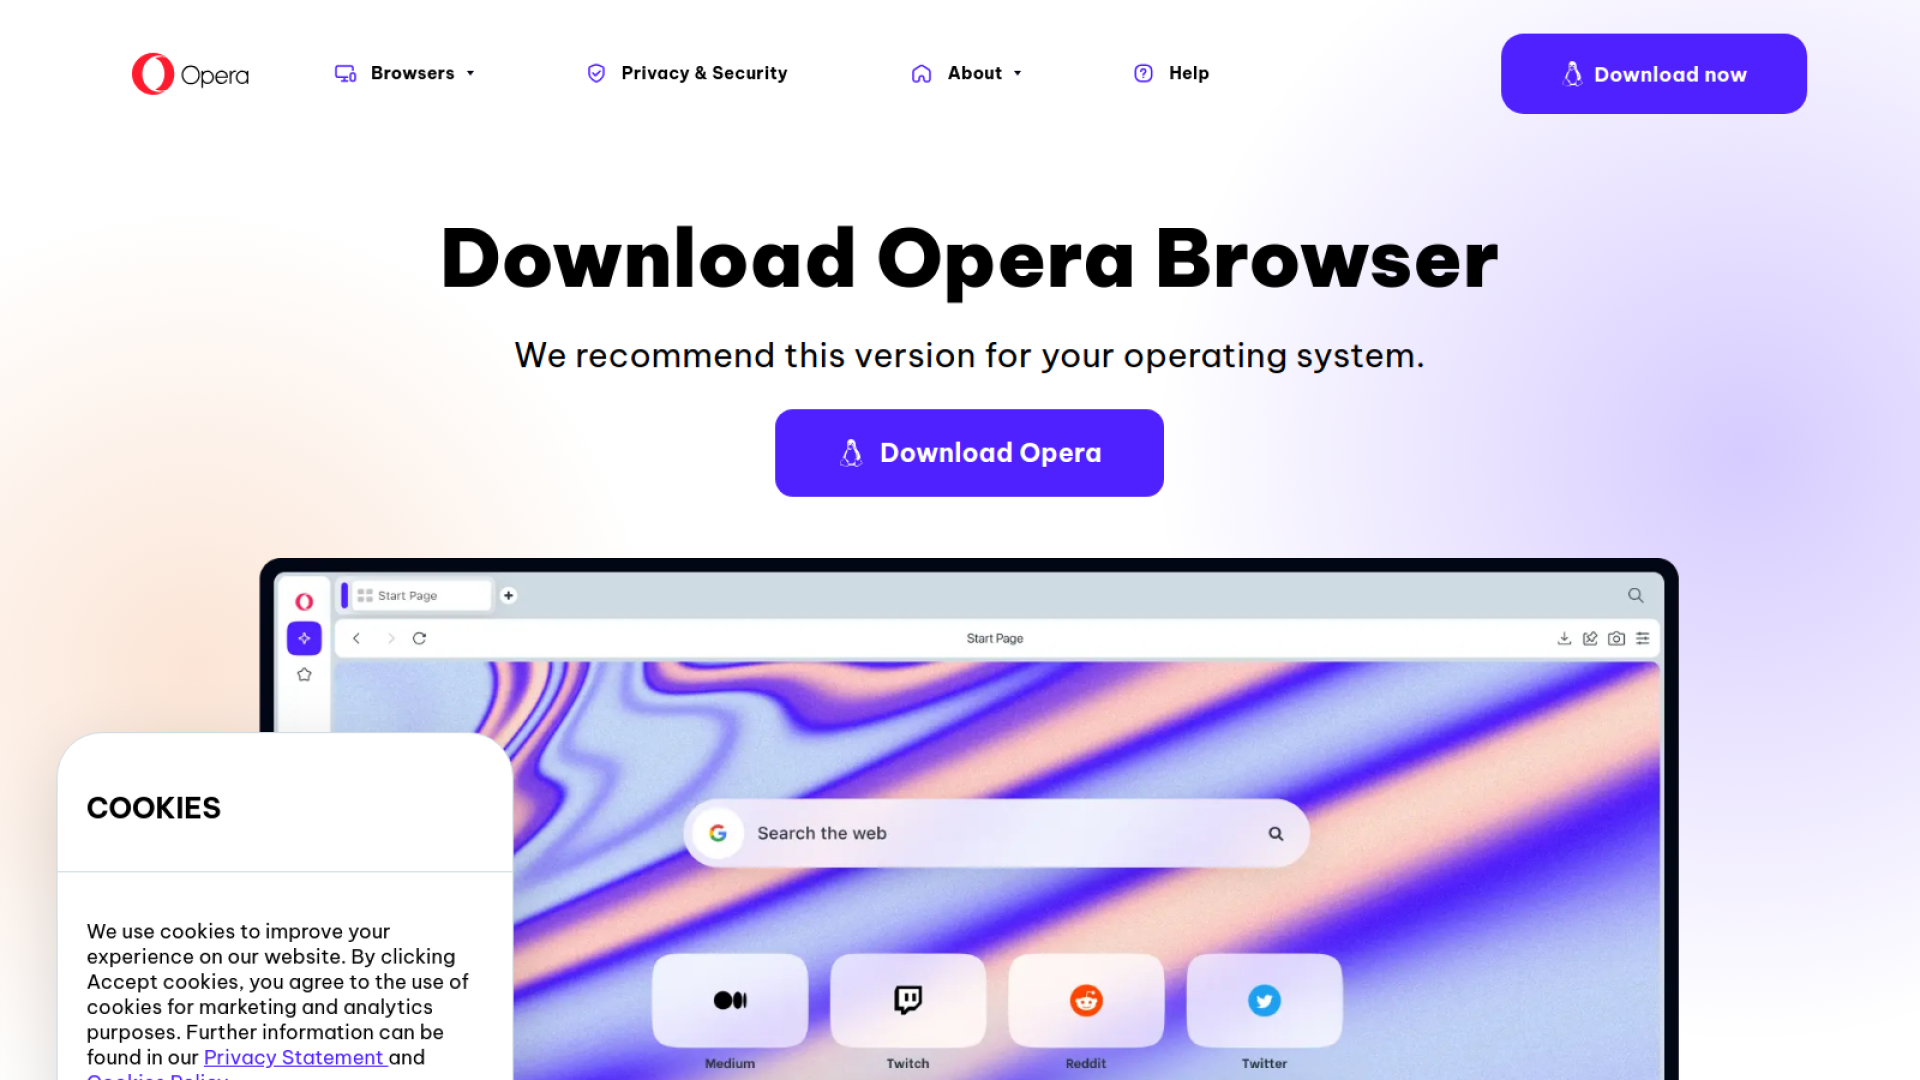 Opera's Aria Browser AI